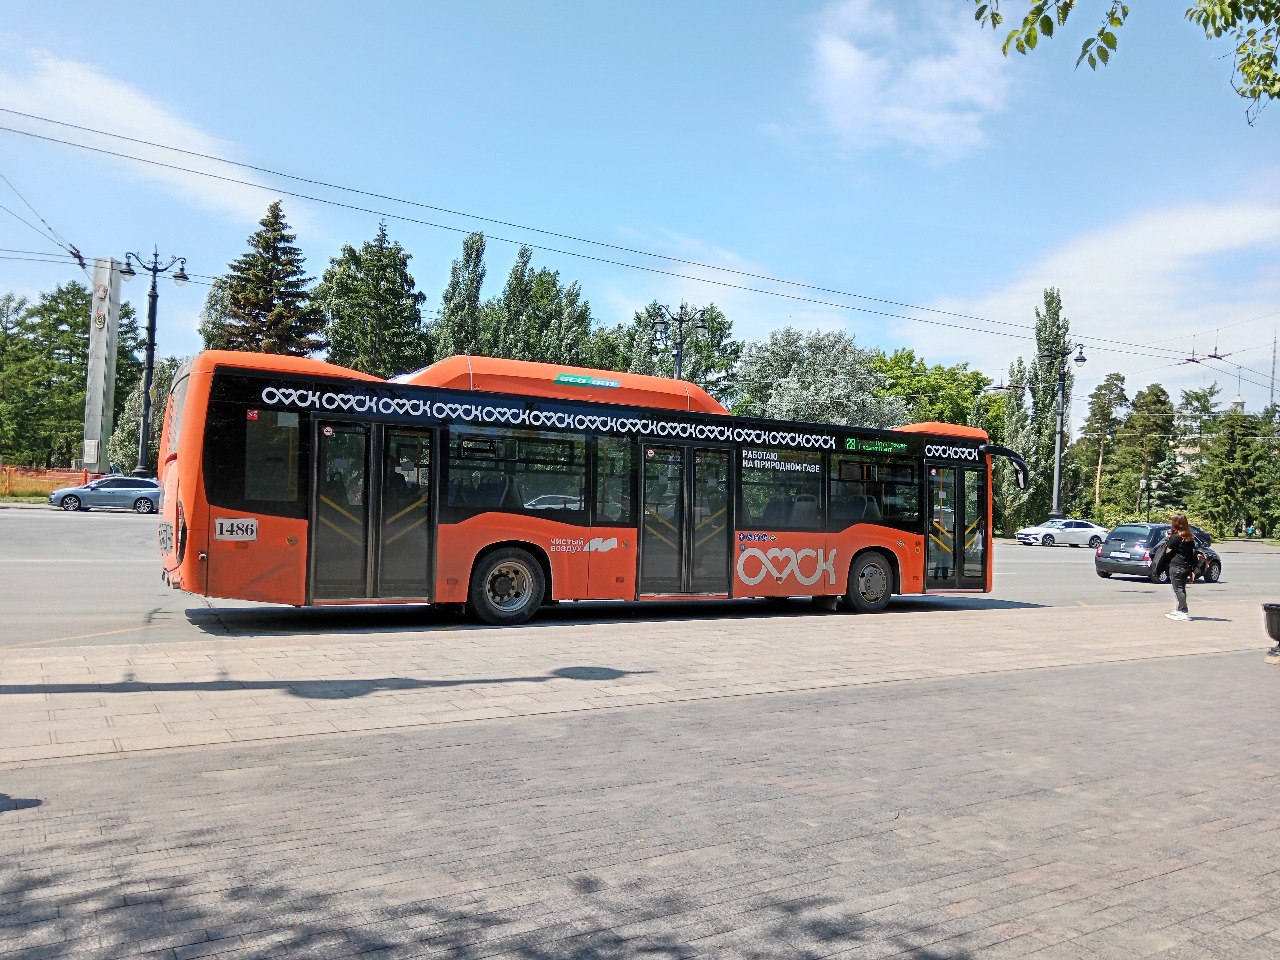 Глава города сообщил о временном изменении автобусных маршрутов в центральной части города в воскресенье.